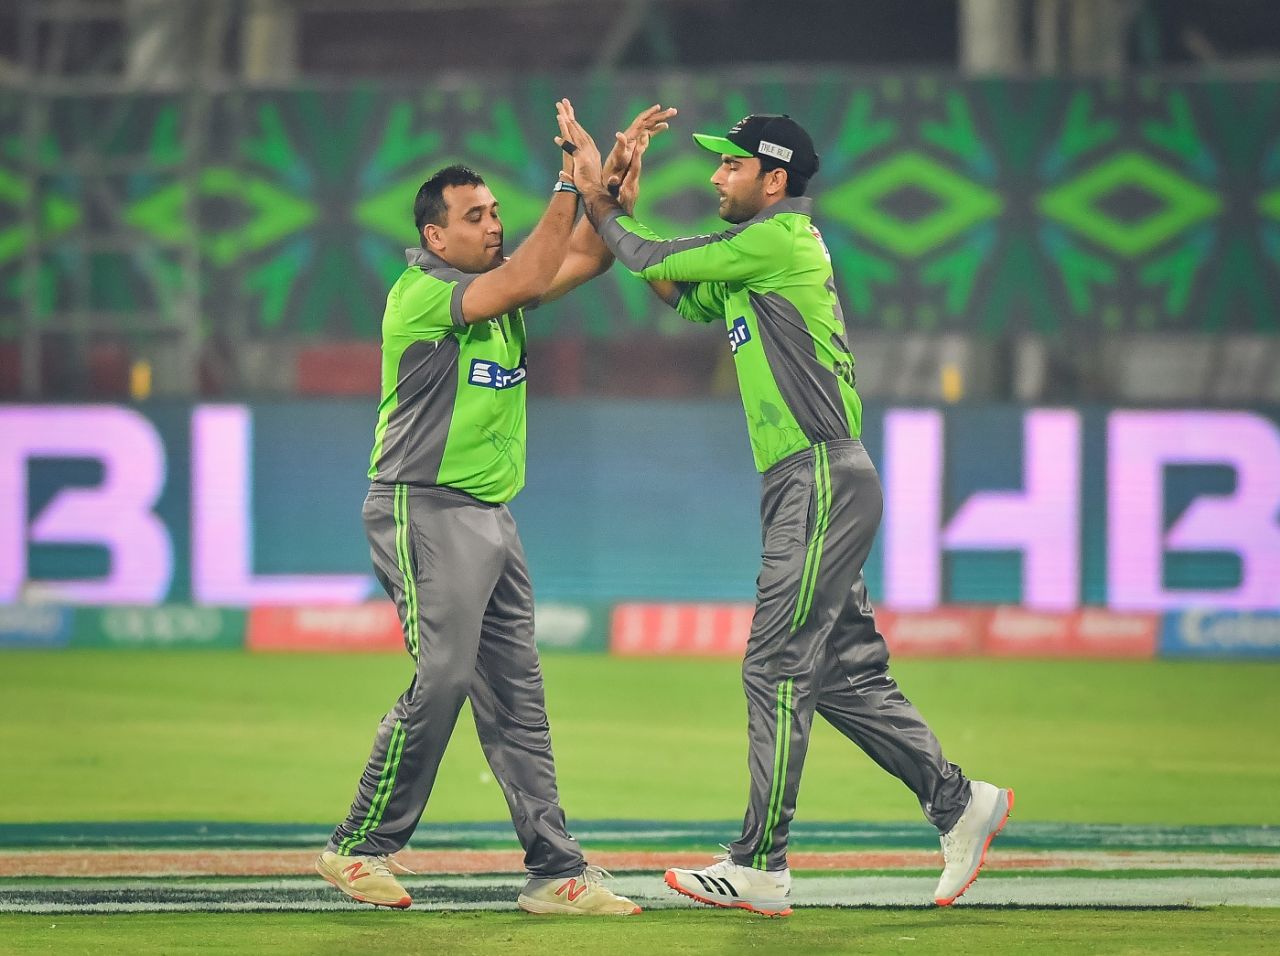 Samit Patel celebrates a wicket, Karachi Kings vs Lahore Qalandars, Karachi, PSL 2020, November 17, 2020